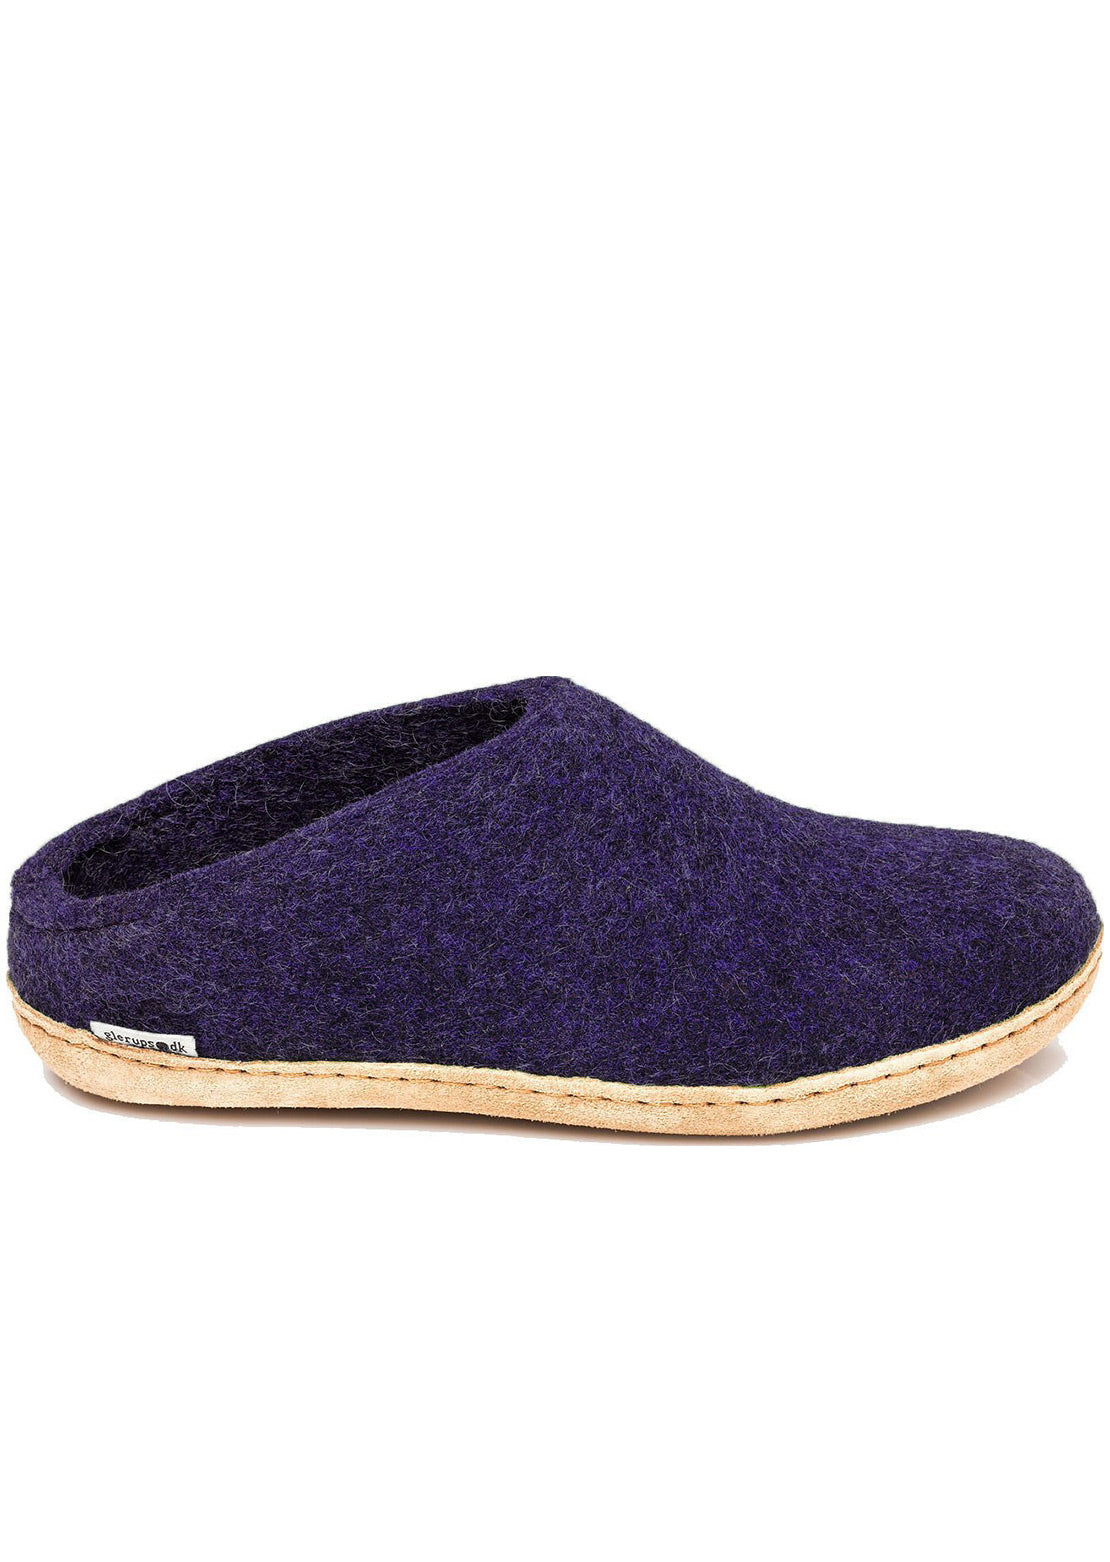 Glerups Unisex Leather Sole Open Heel Slippers Purple